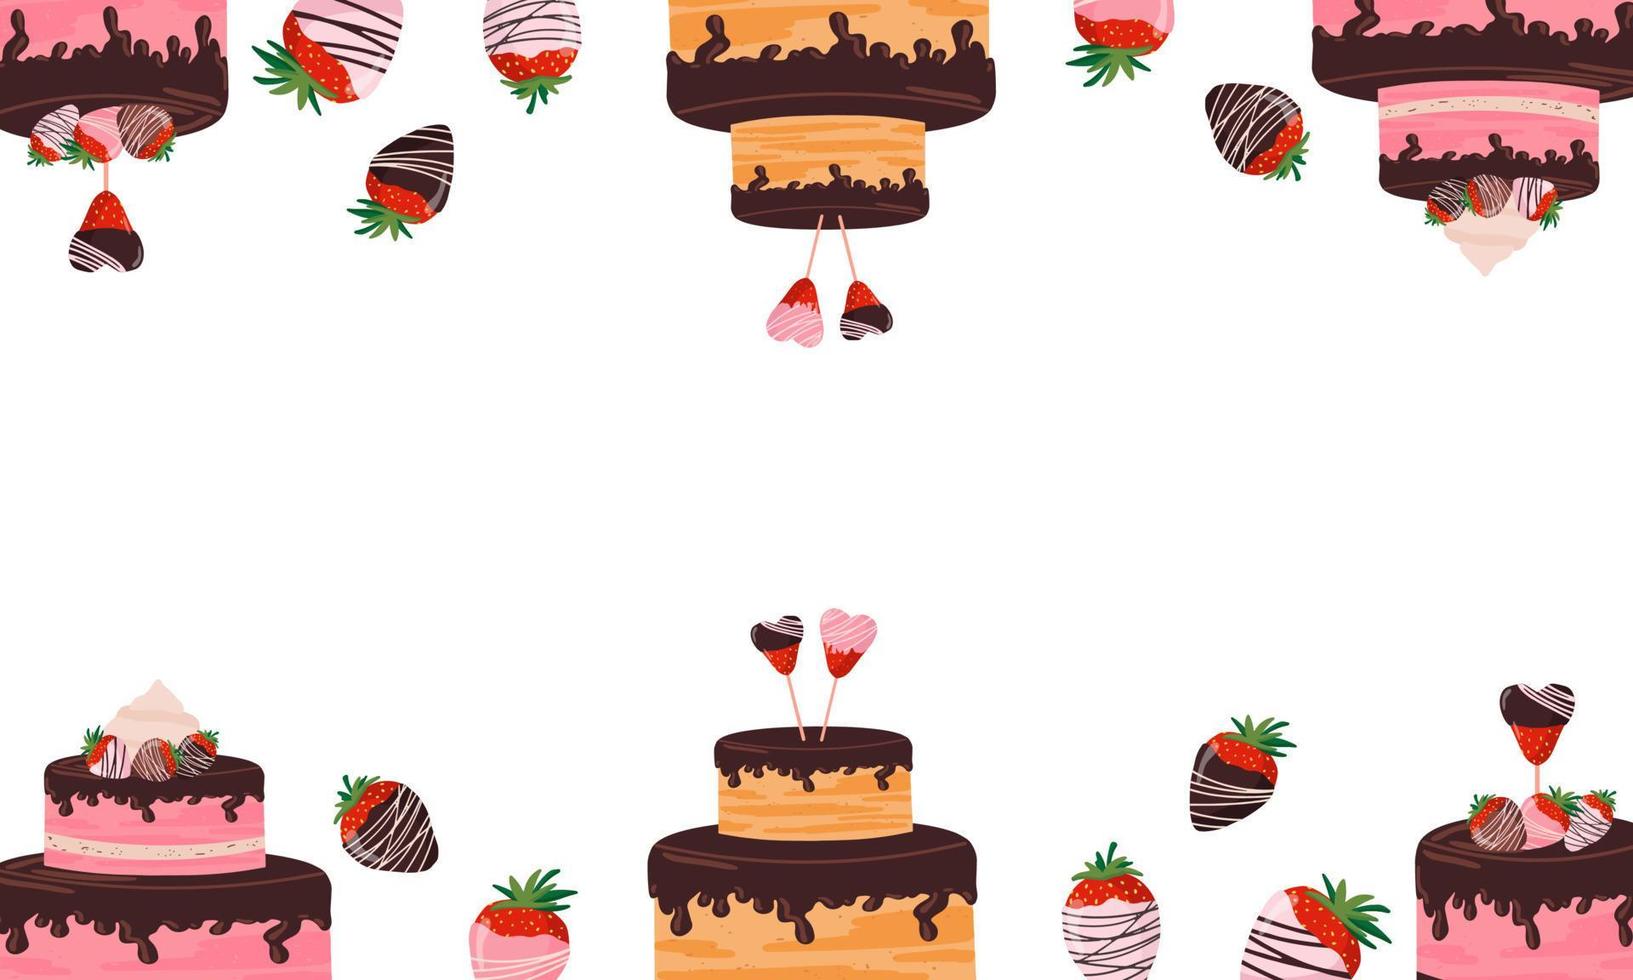 schöner hintergrund, banner mit süßwaren, kuchen, erdbeeren mit schokolade, verschiedene süßigkeiten vektor